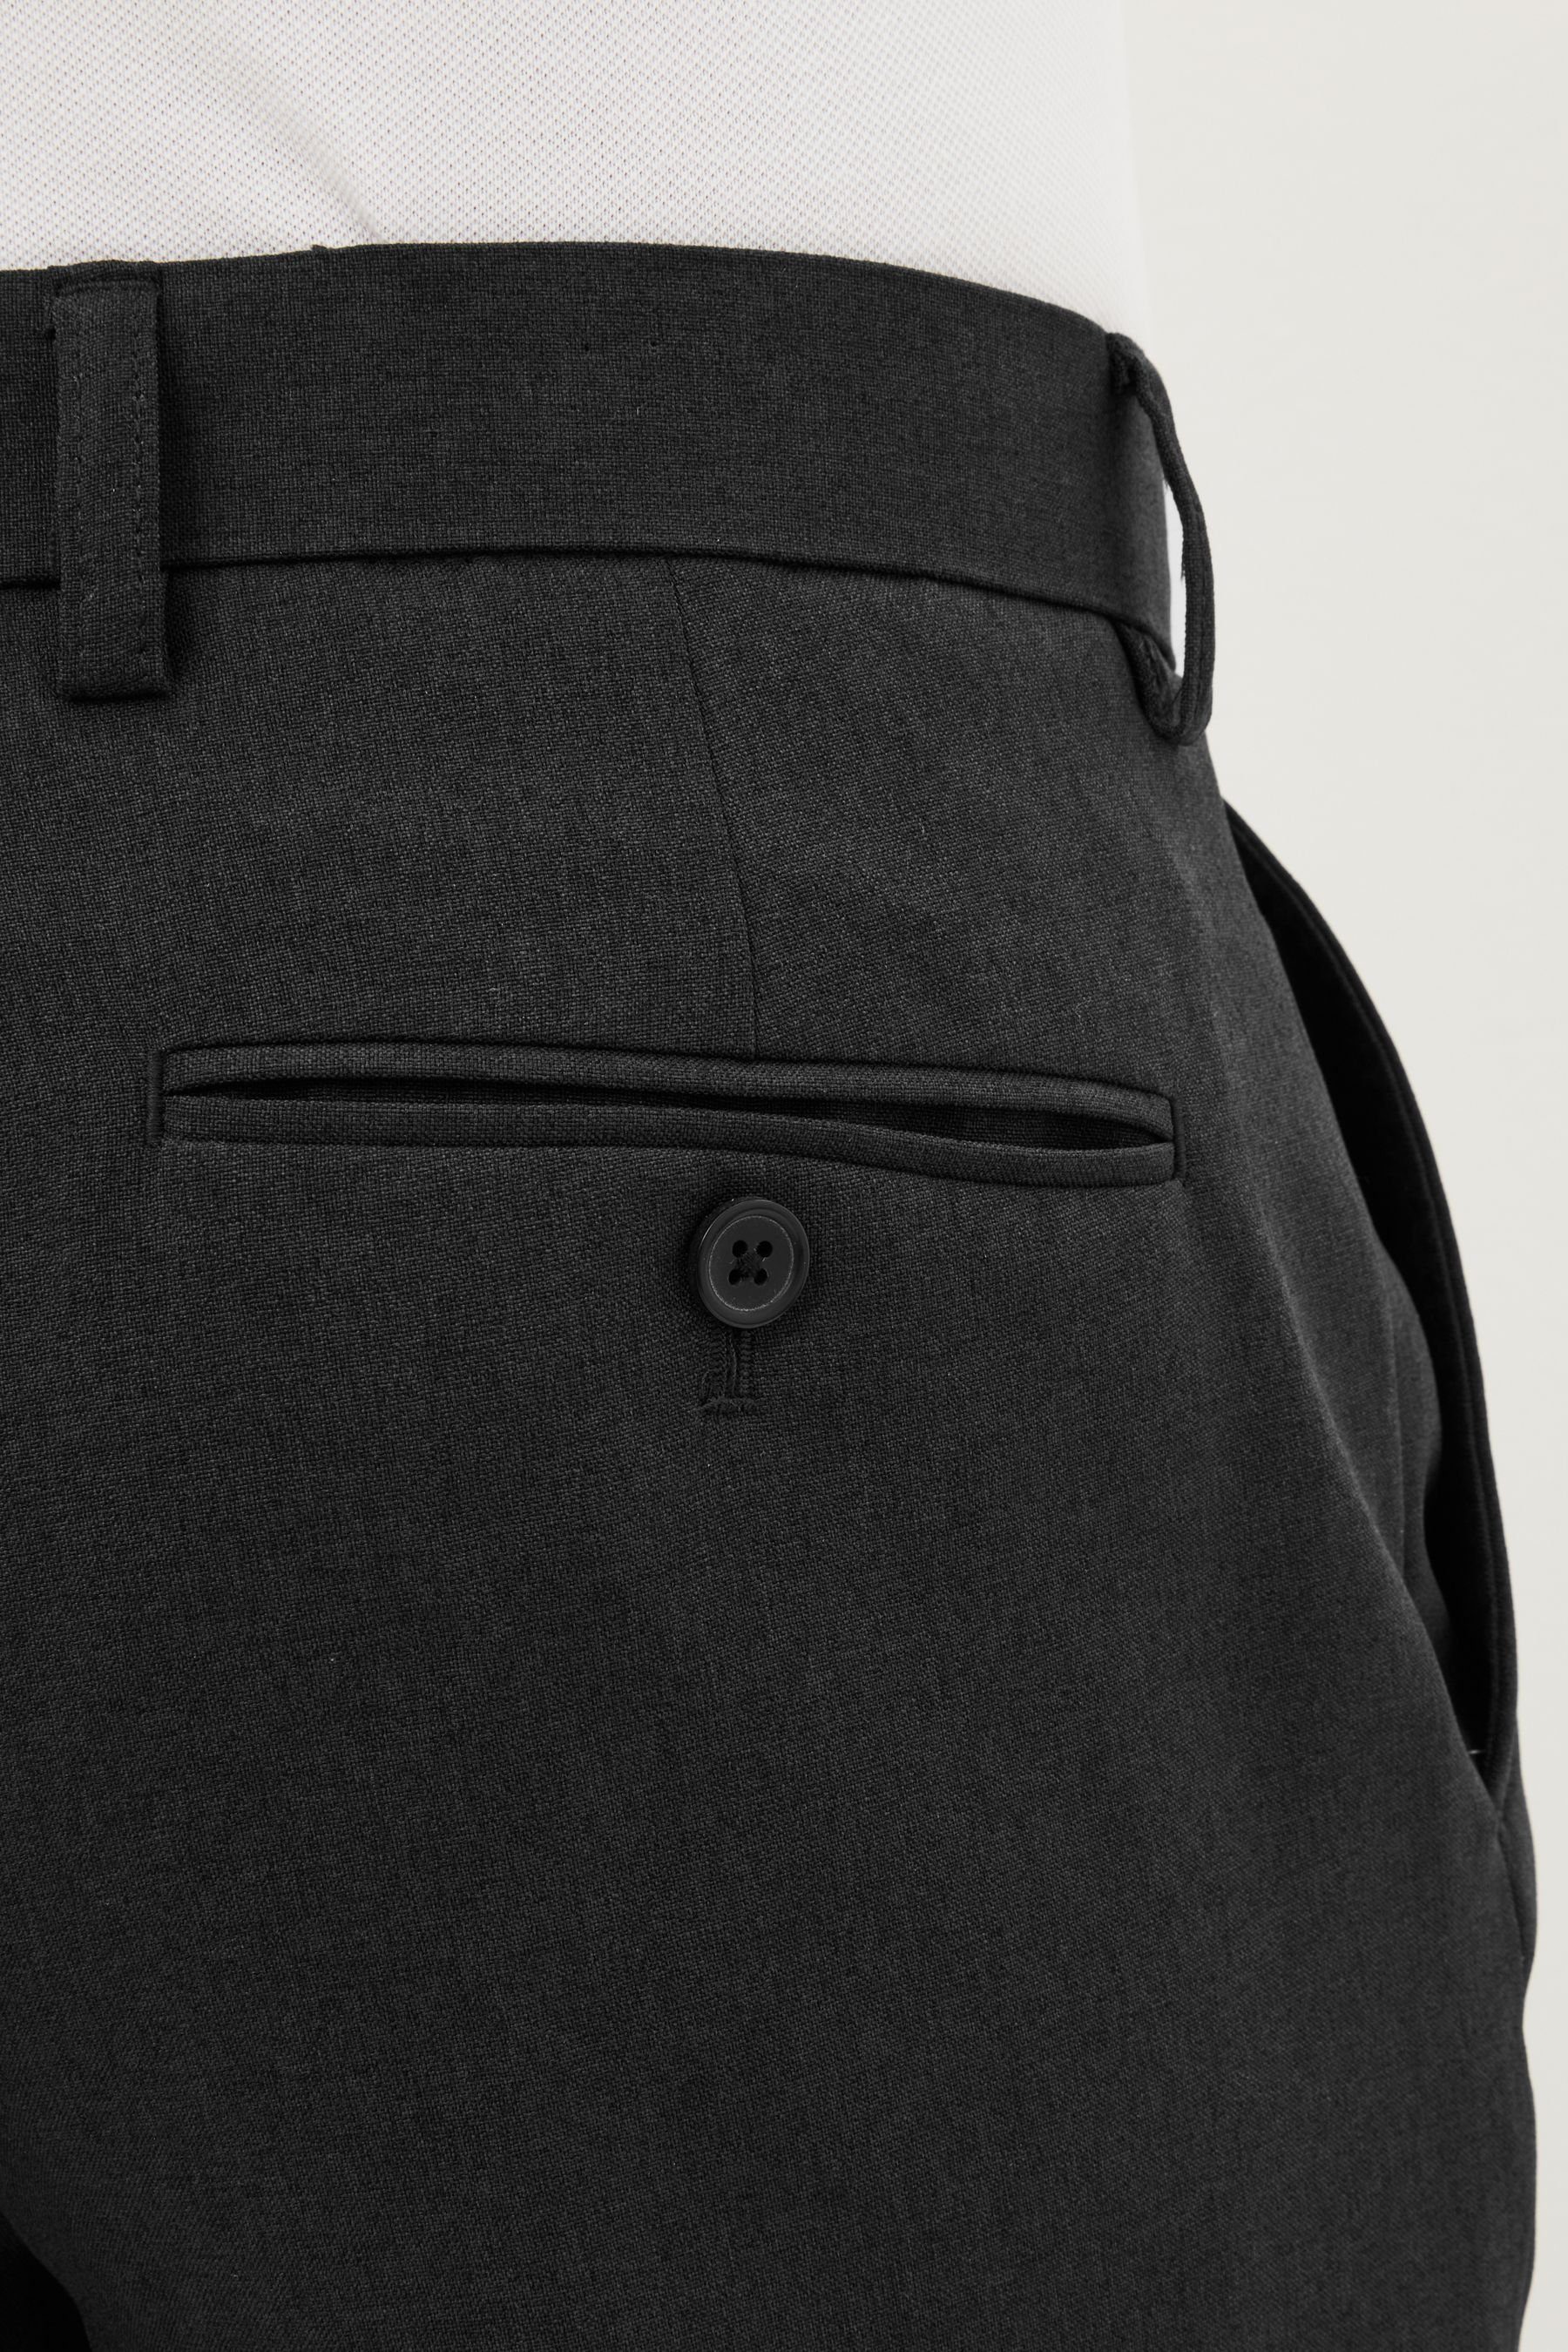 Maschinenwäsche Tailored Grey ohne Next (1-tlg) Hose Bundfalte, Fit Stoffhose Charcoal